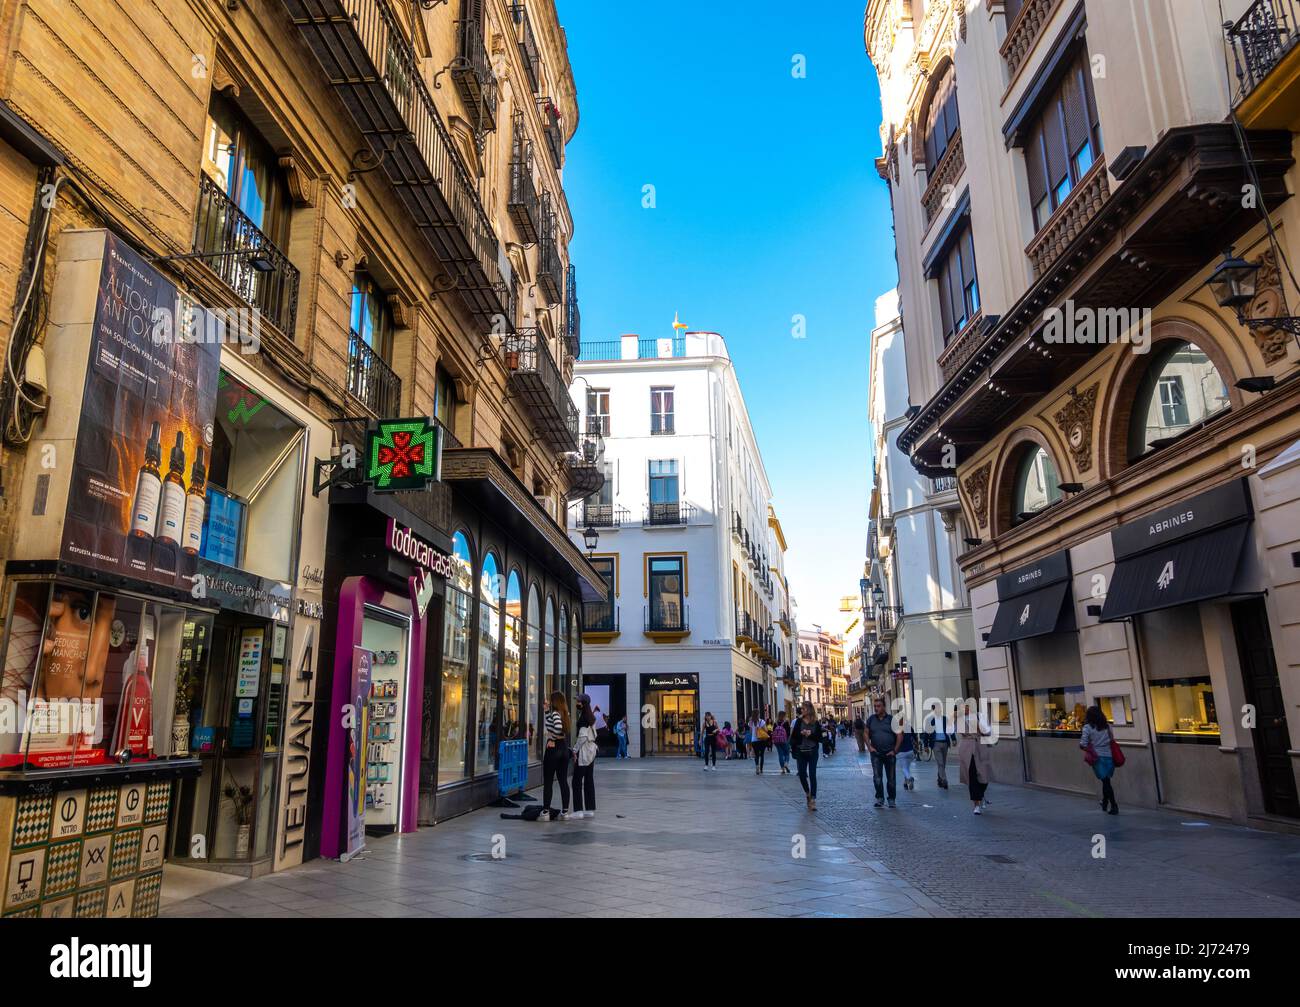 : C. Tetuán, hohe Straße im Einkaufsviertel von Sevilla. Sevilla Centro, Andalusien, Spanien Stockfoto